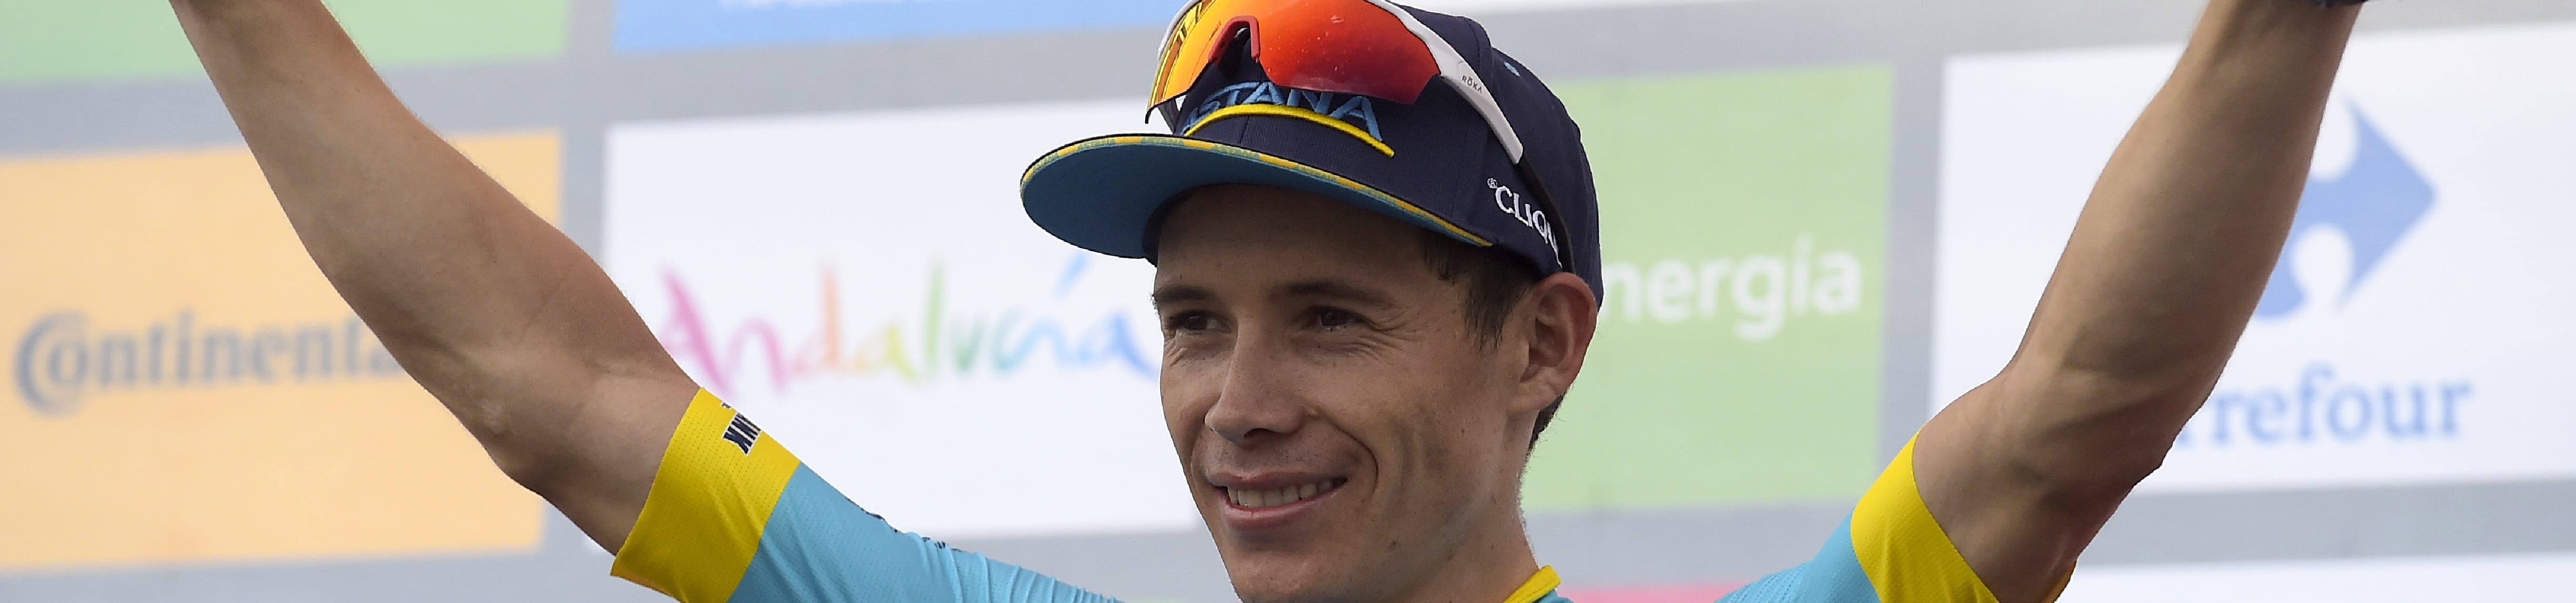 Vuelta 2019, tappa 18: Roglic in difesa, Lopez e Quintana pronti all'affondo